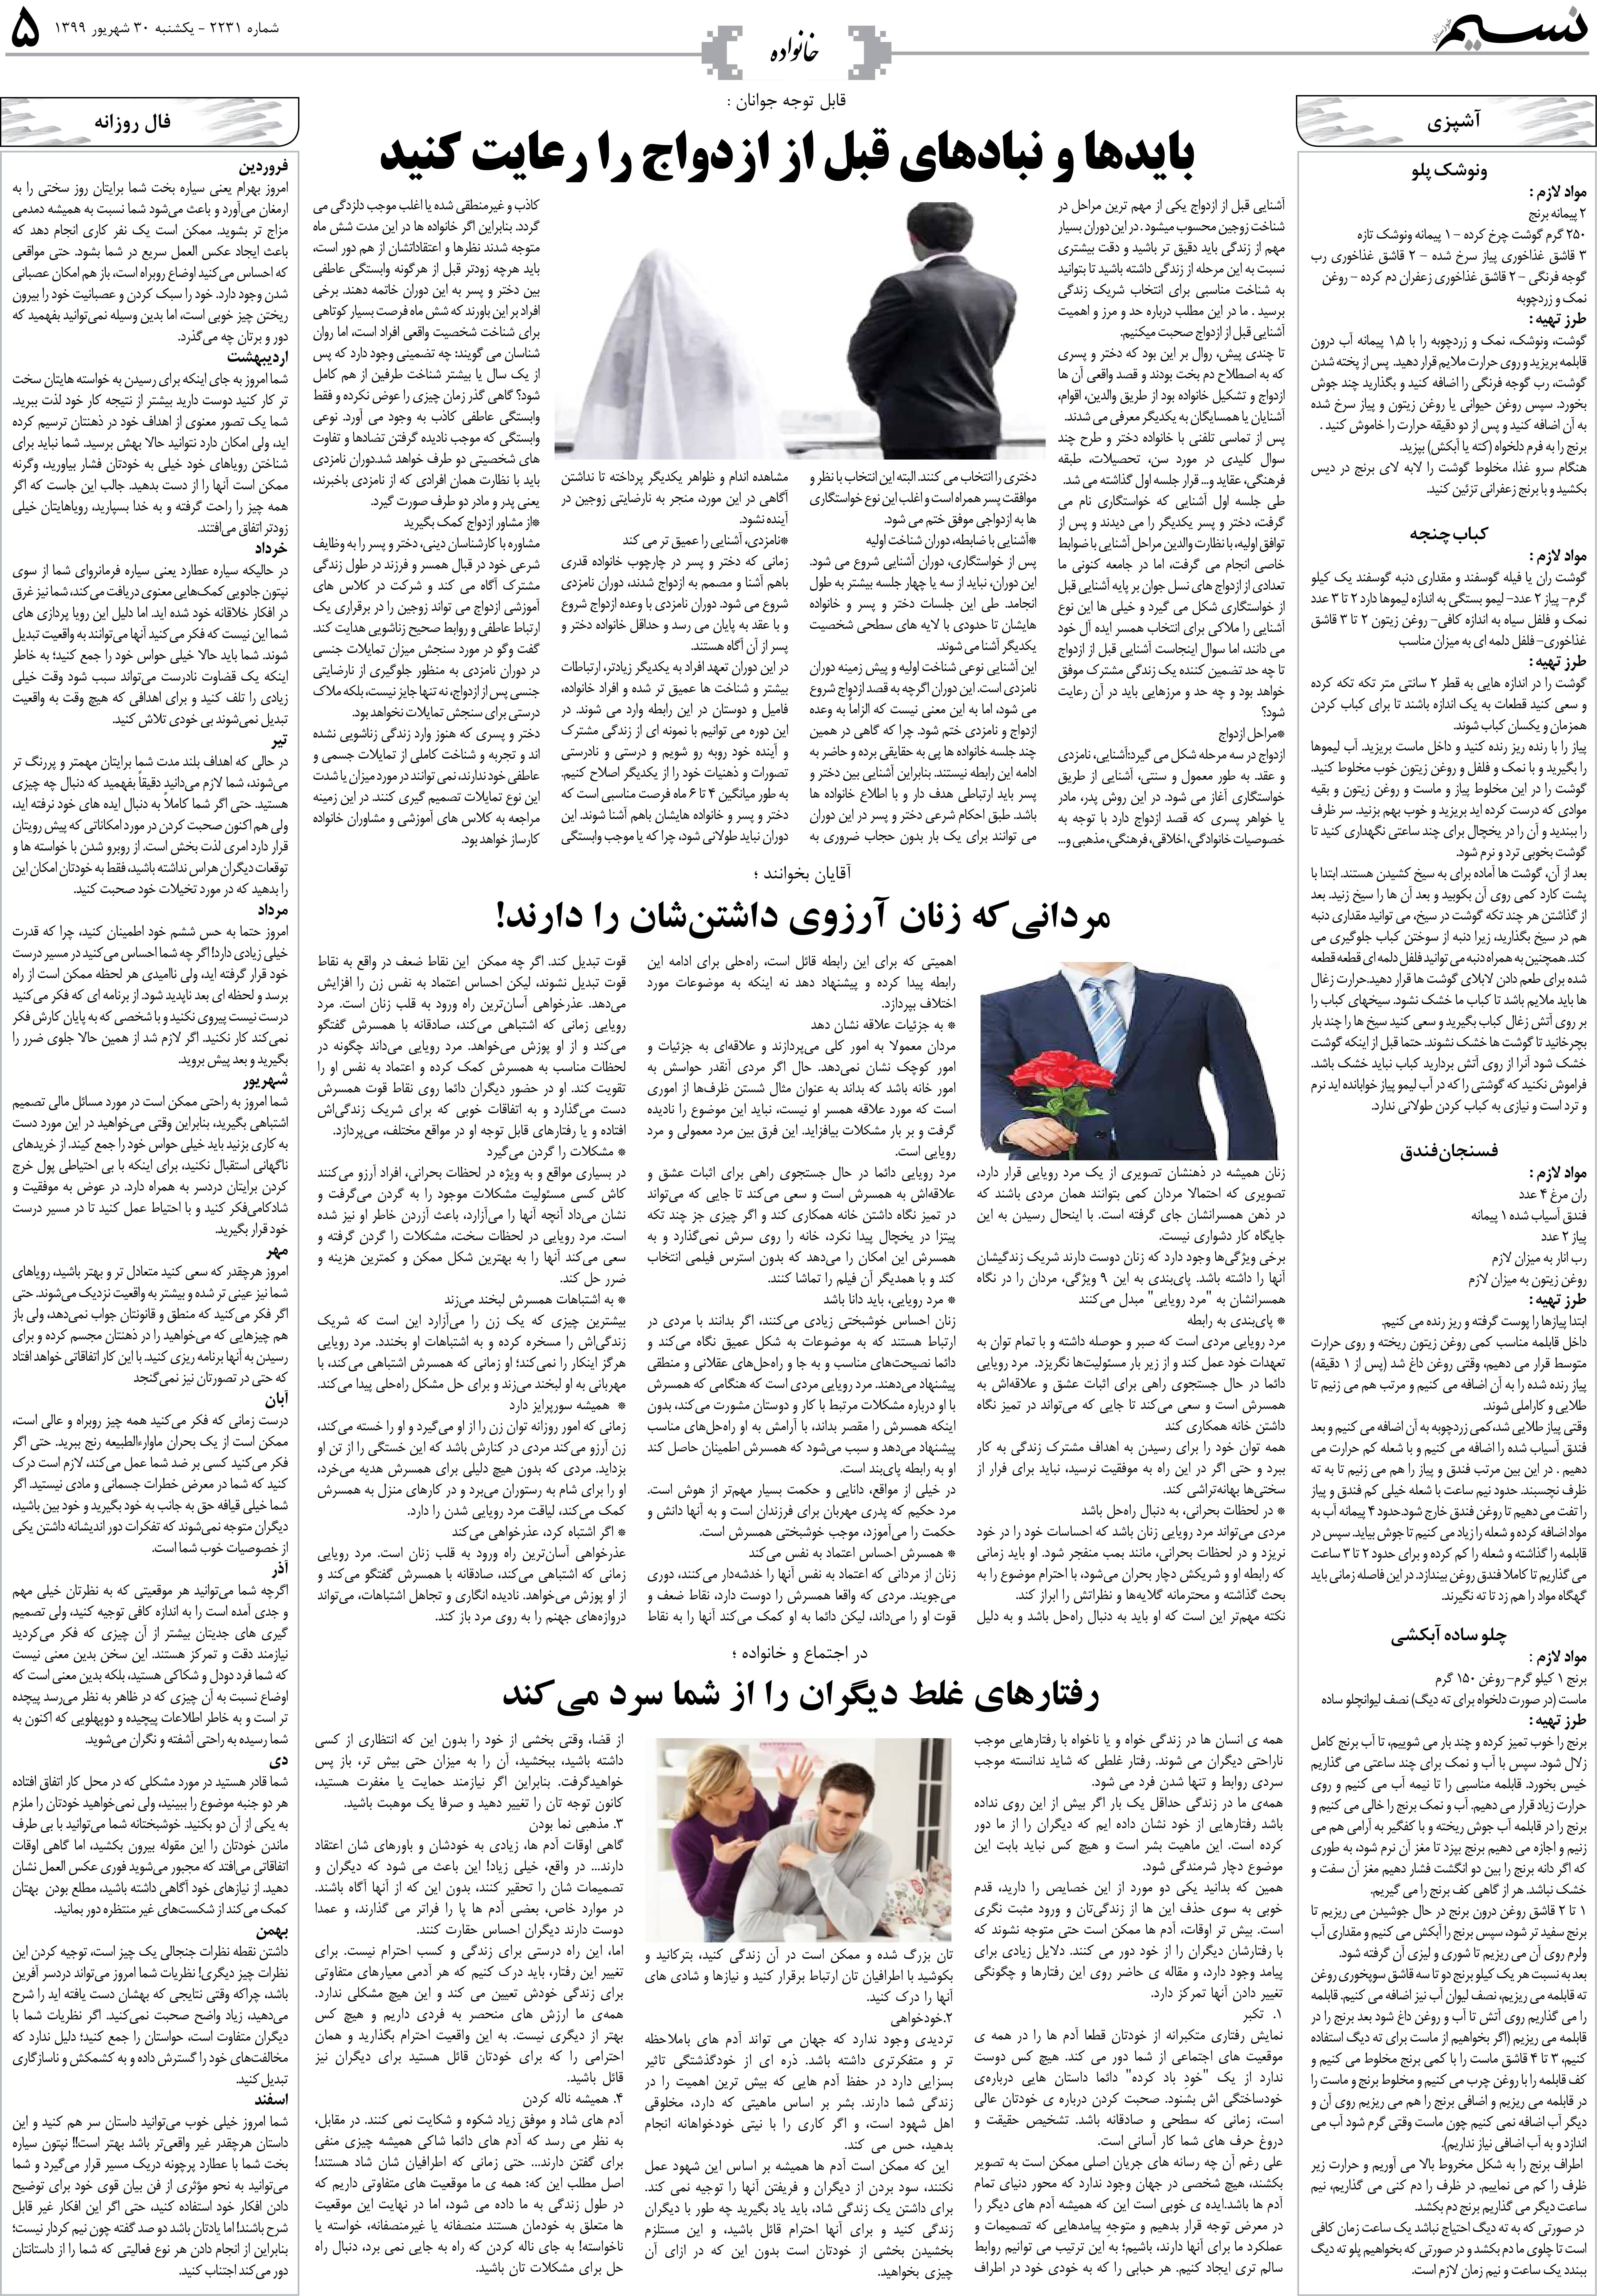 صفحه خانواده روزنامه نسیم شماره 2231